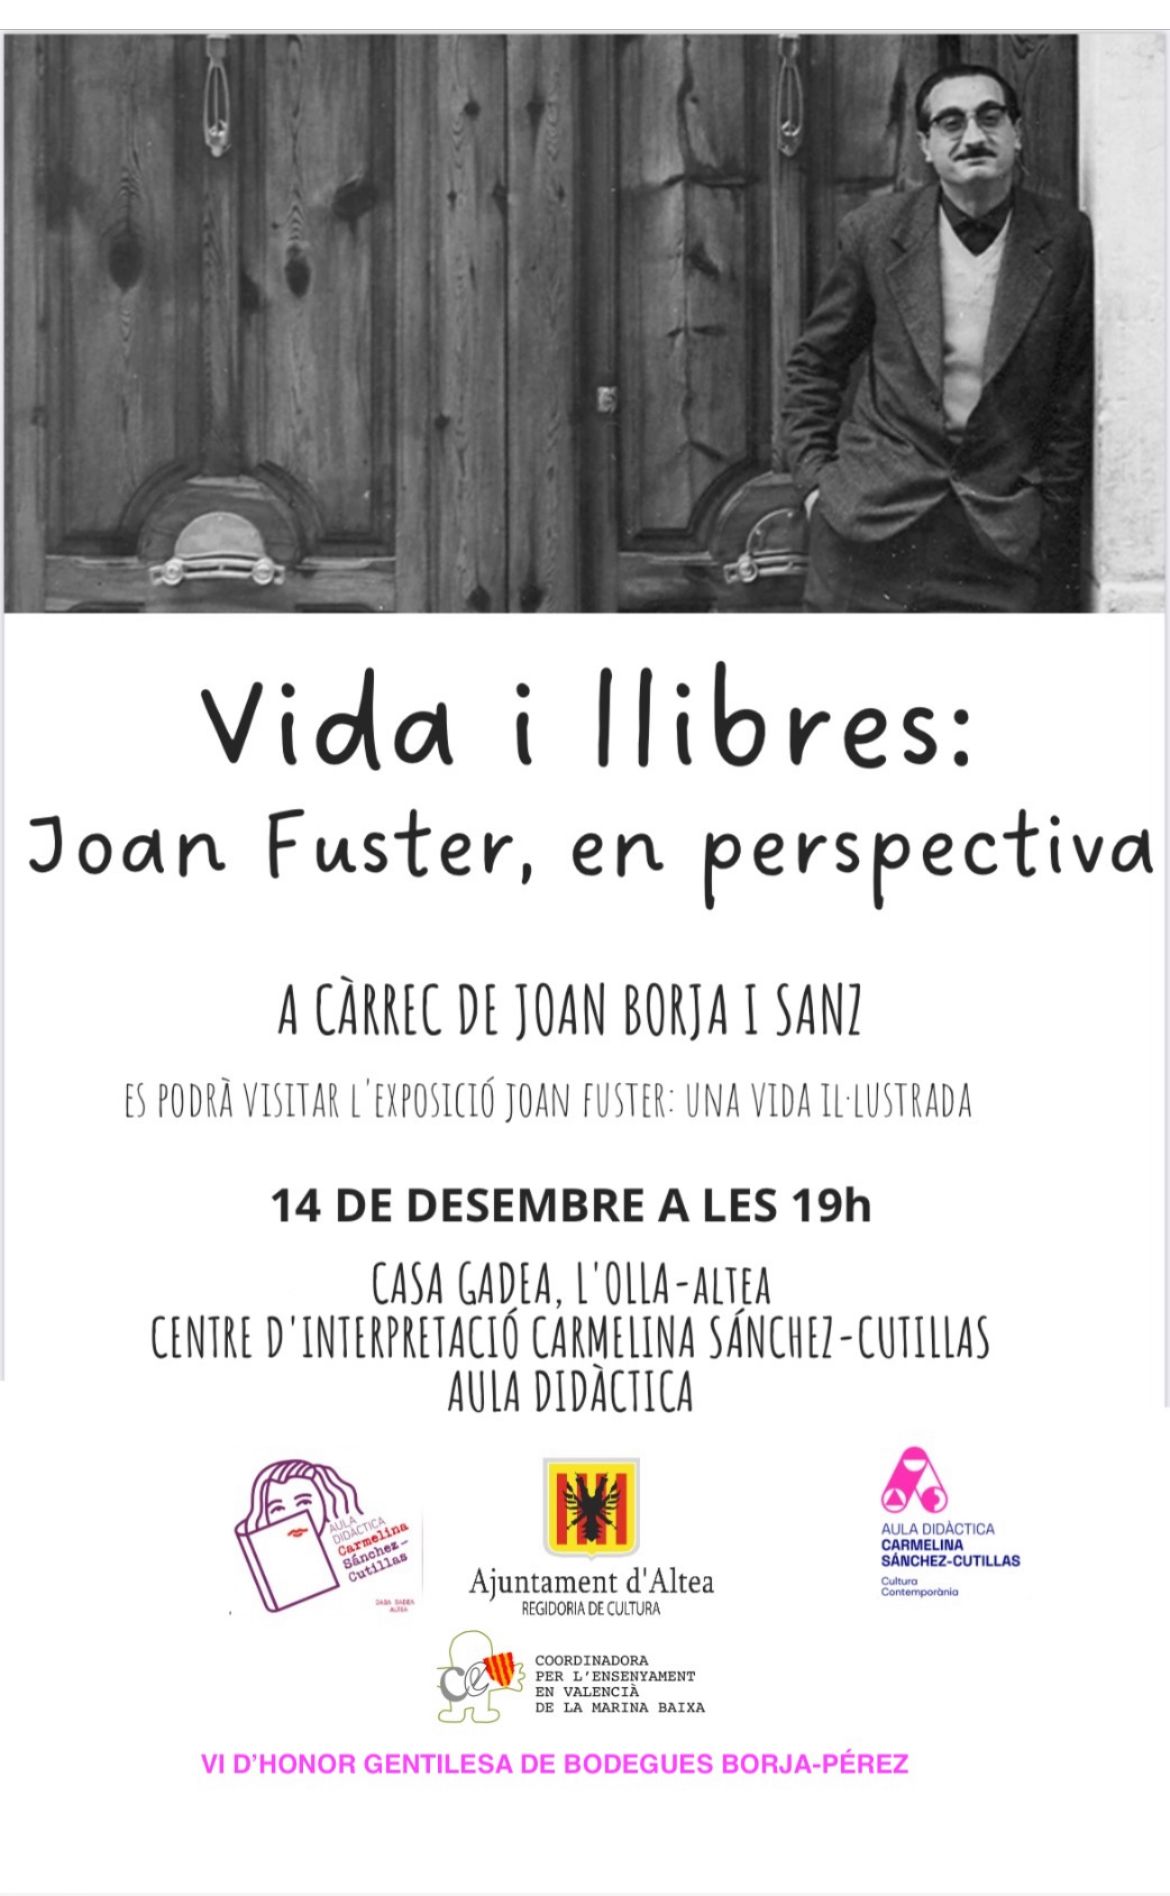 Conferencia-Exposició ‘Vida i llibres: Joan Fuster, en perspectiva’. 14 de desembre a les 19:00h en Casa Gadea. Conferència a càrrec de Joan Borja i Sanz. Es podrà visitar l’exposició ‘Joan Fuster: Una vida il.lustrada’. Entrada lliure i gratuïta.